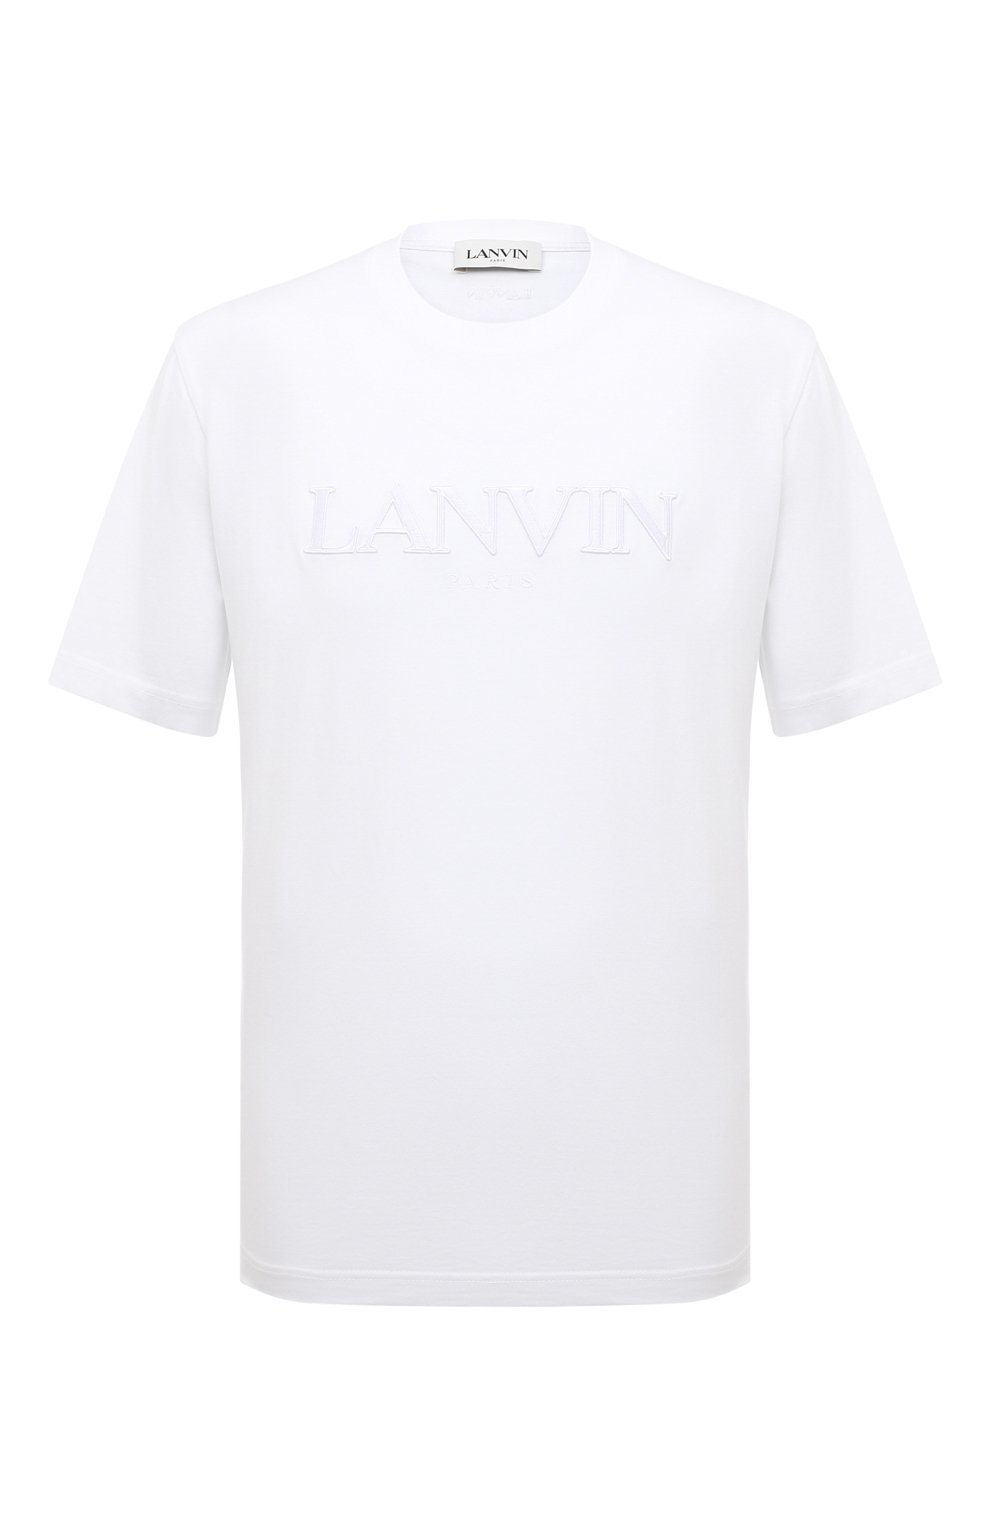 Футболки Lanvin, Хлопковая футболка Lanvin, Португалия, Белый, Хлопок: 100%;, 13377066  - купить